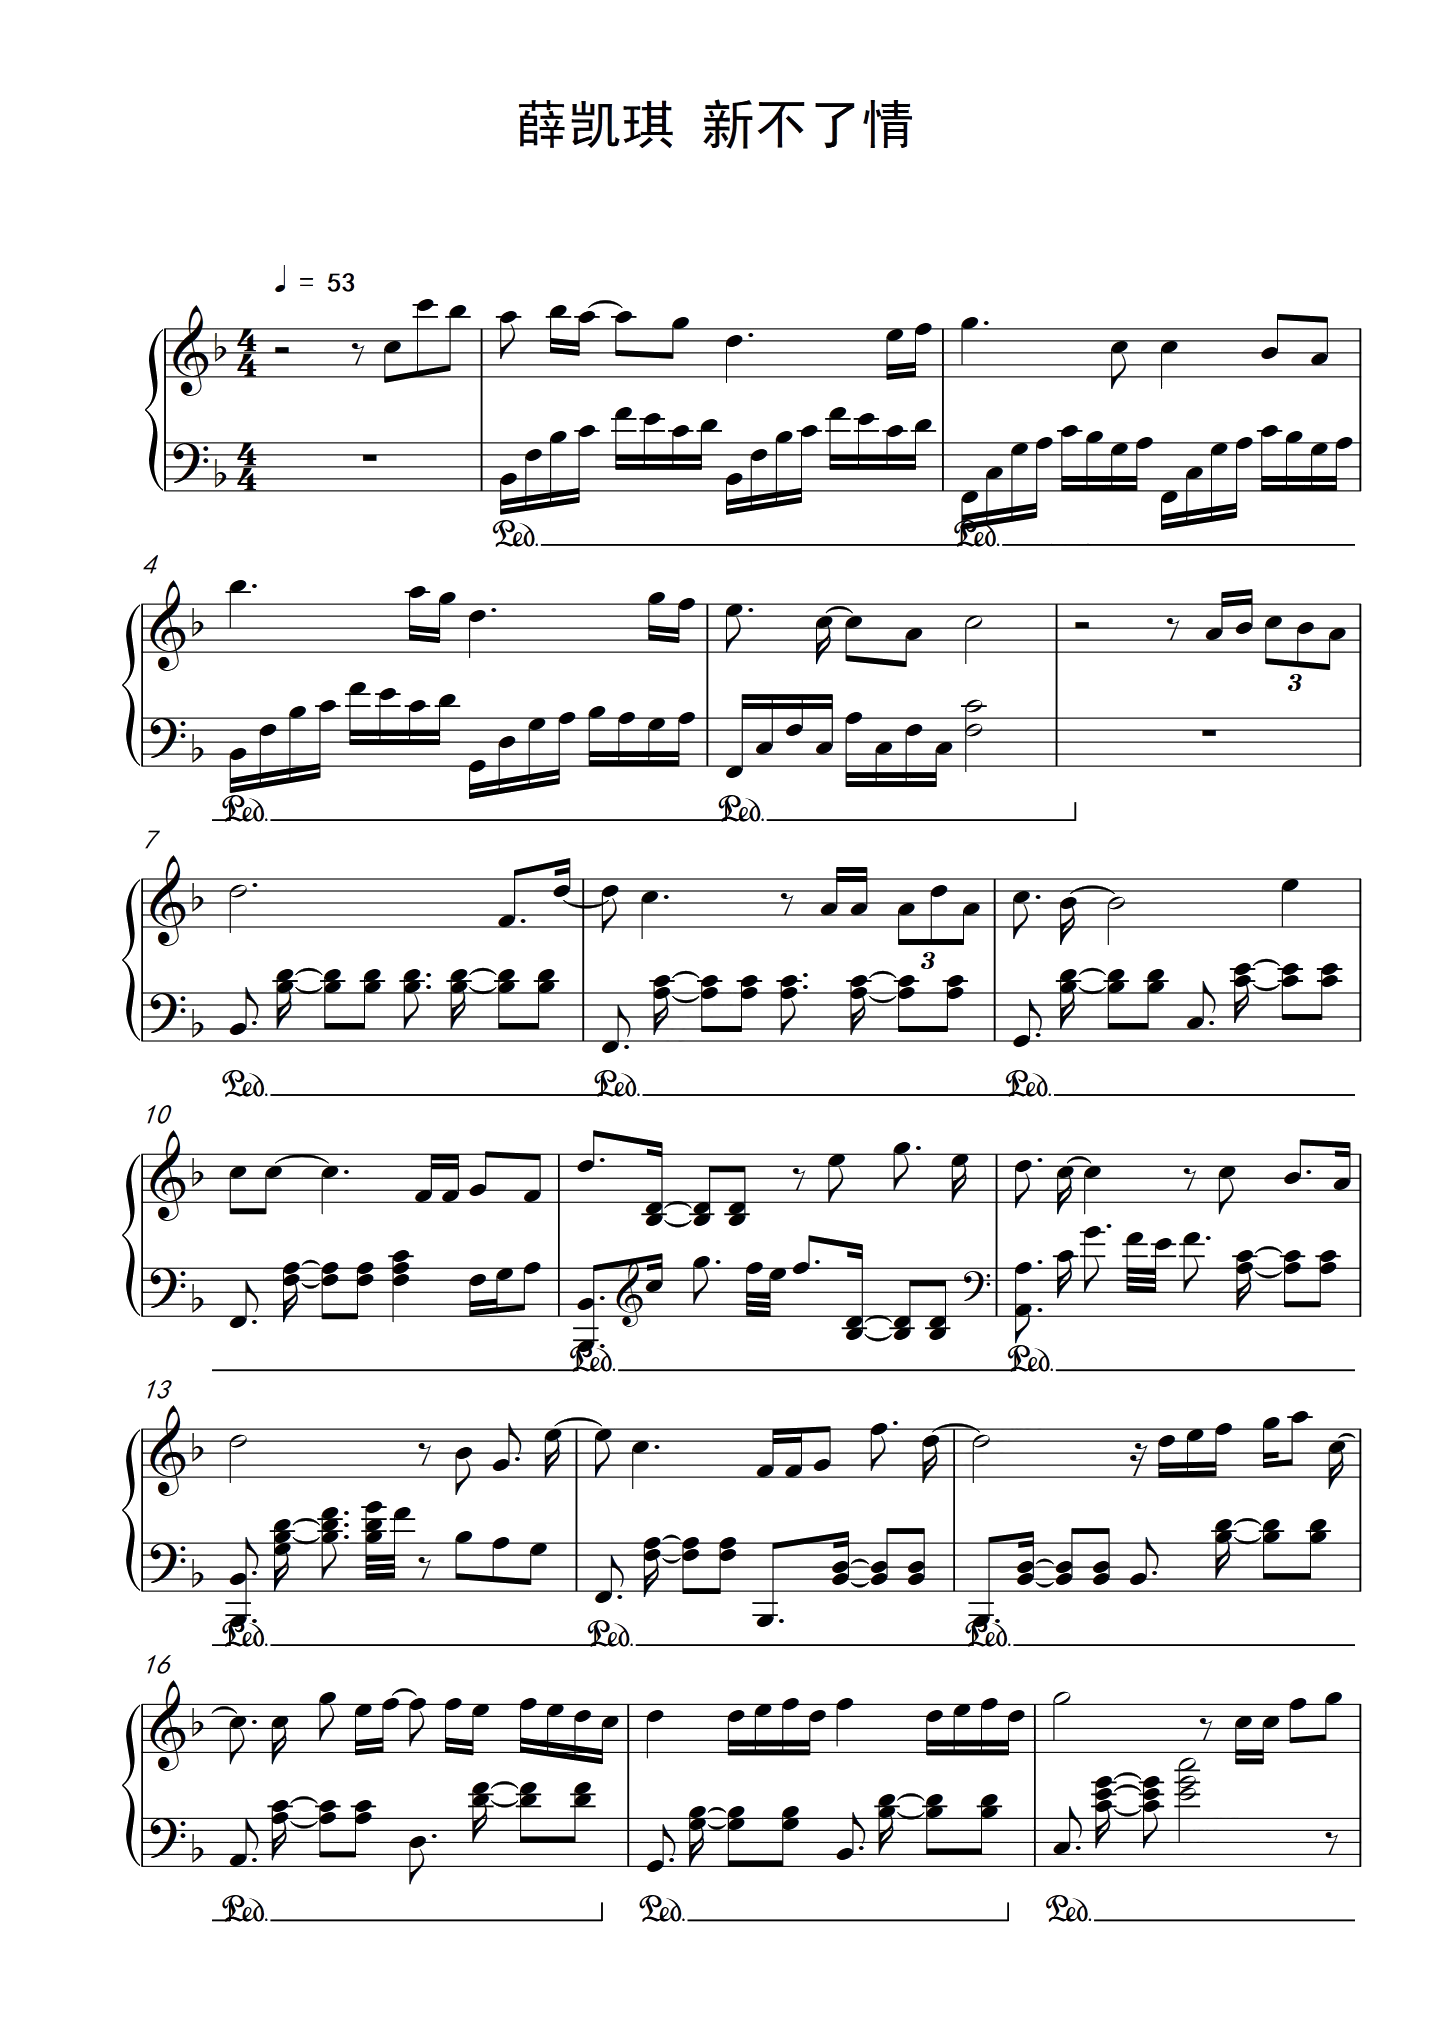 迟迟-薛之谦双手简谱预览1-钢琴谱文件（五线谱、双手简谱、数字谱、Midi、PDF）免费下载